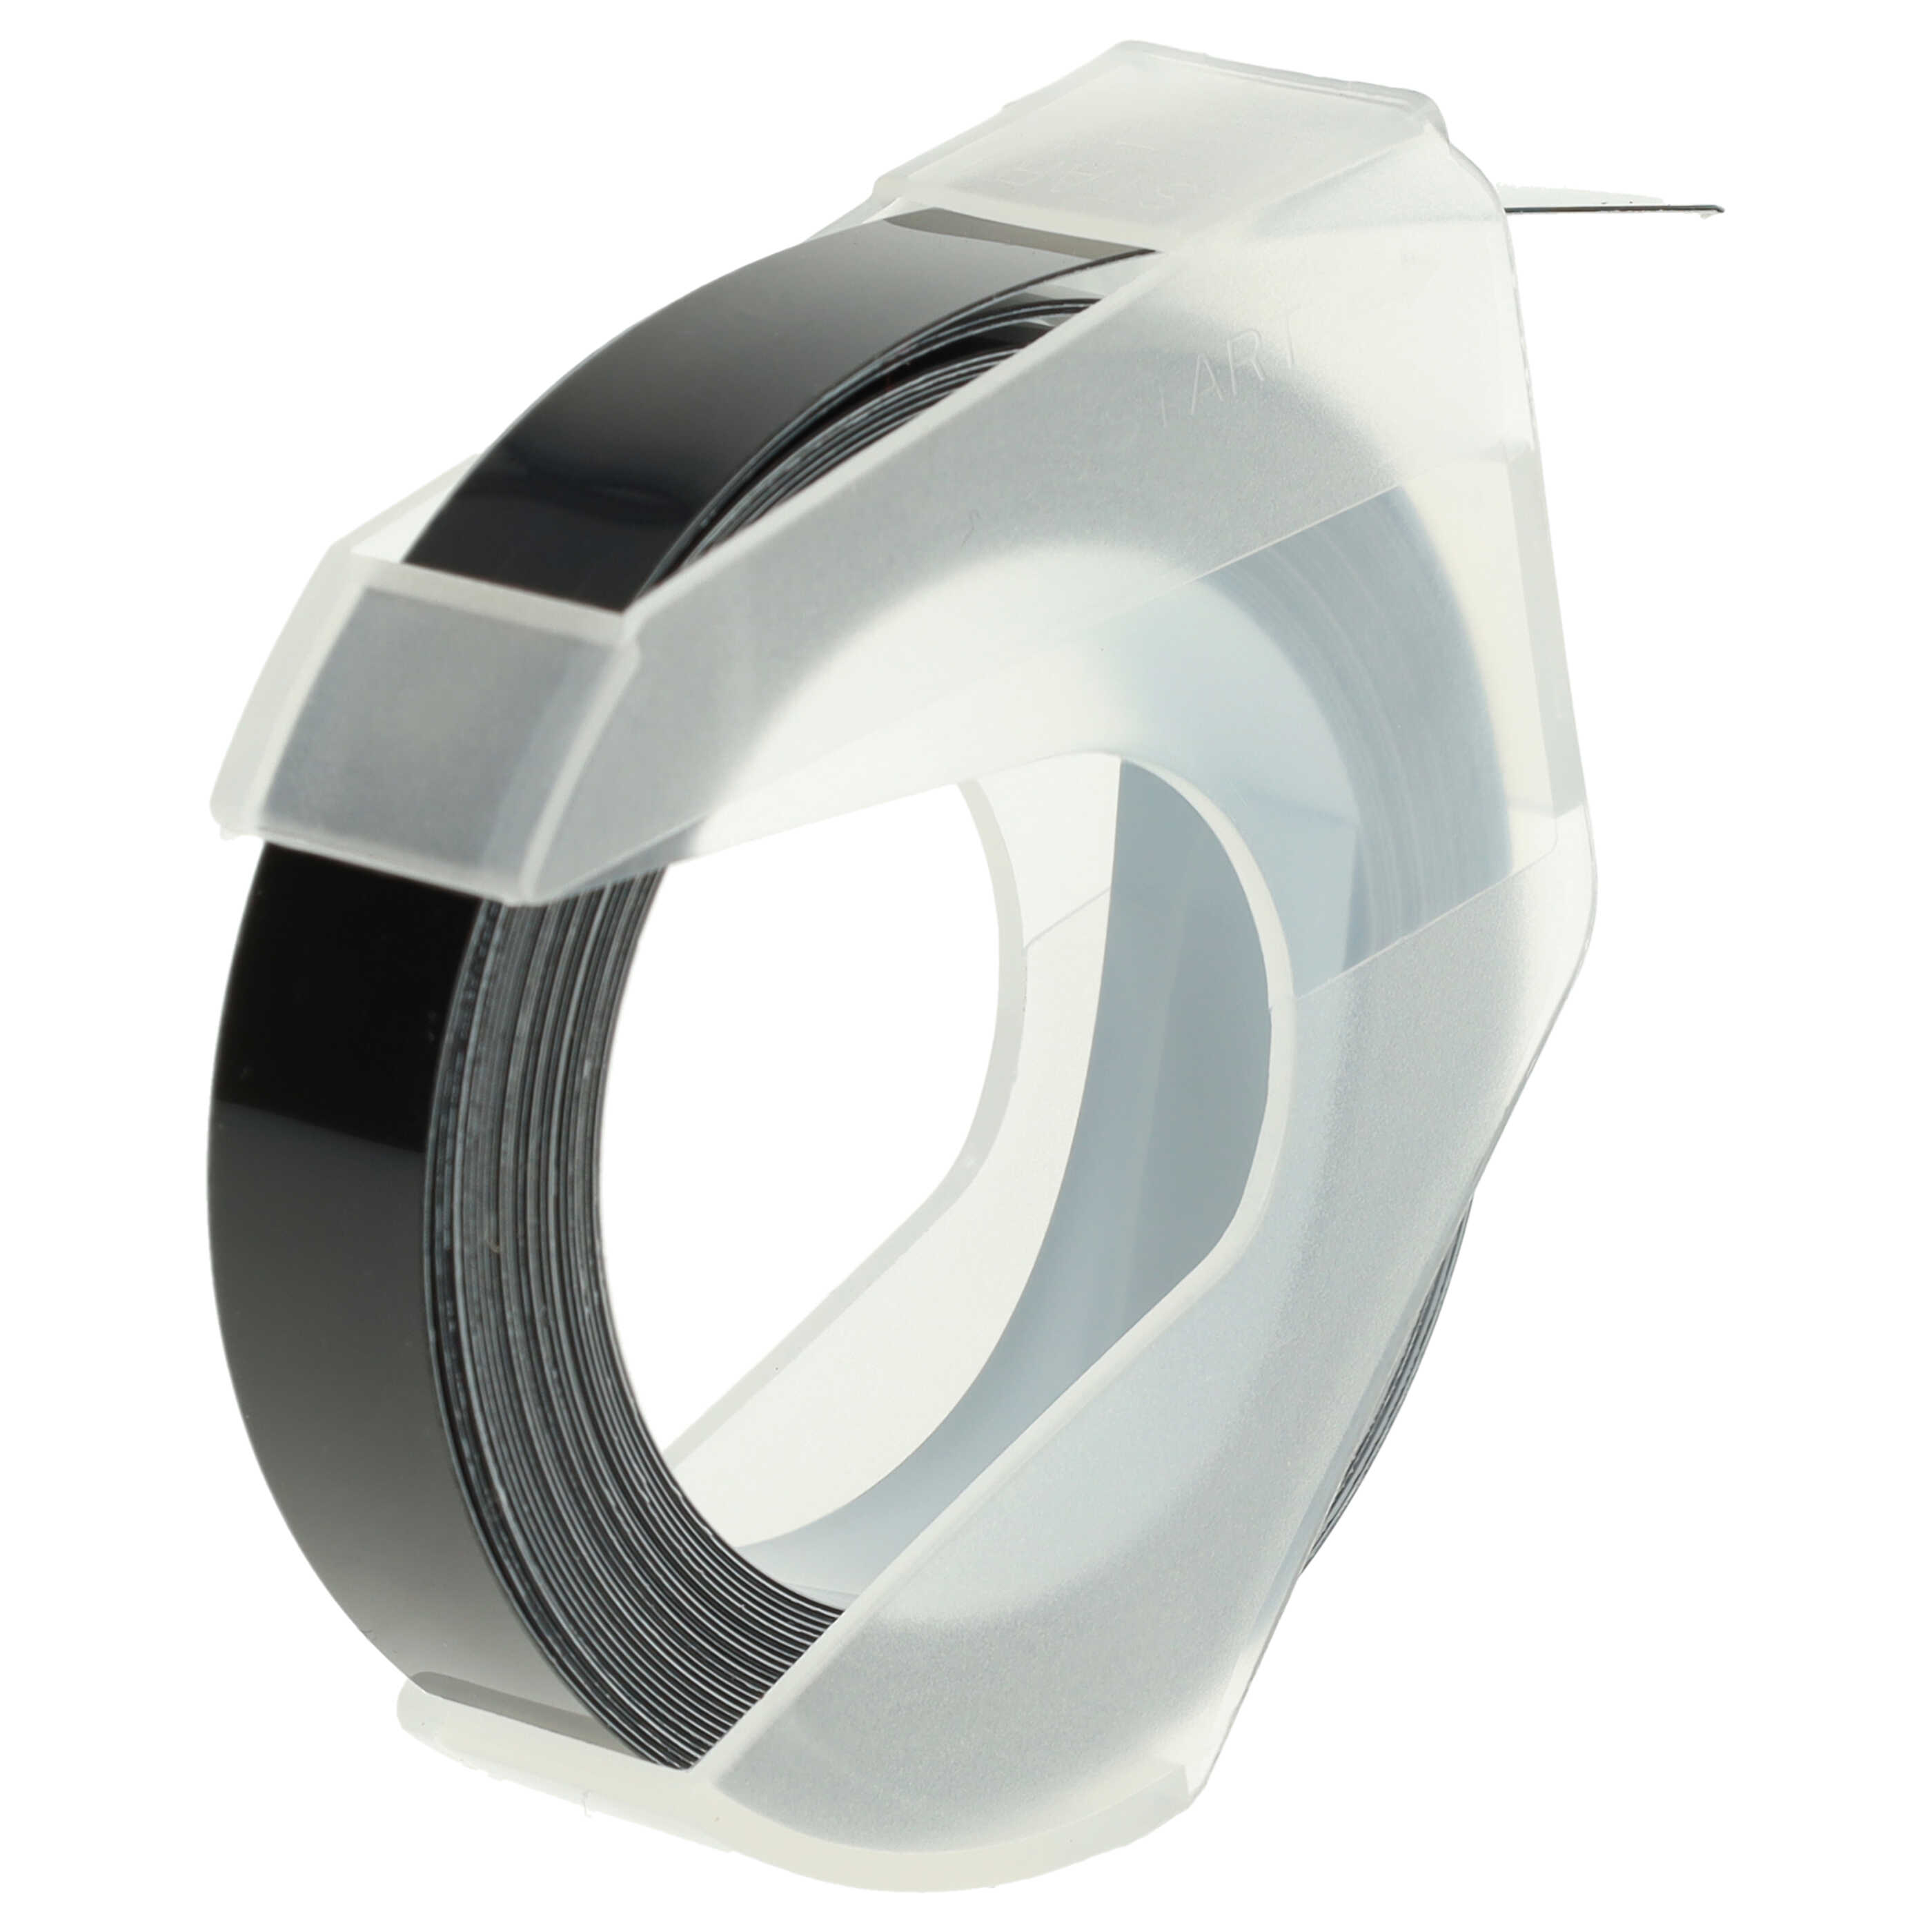 Casete cinta relieve 3D Casete cinta escritura reemplaza Dymo 520109, 0898130, S0898130 Blanco su Negro